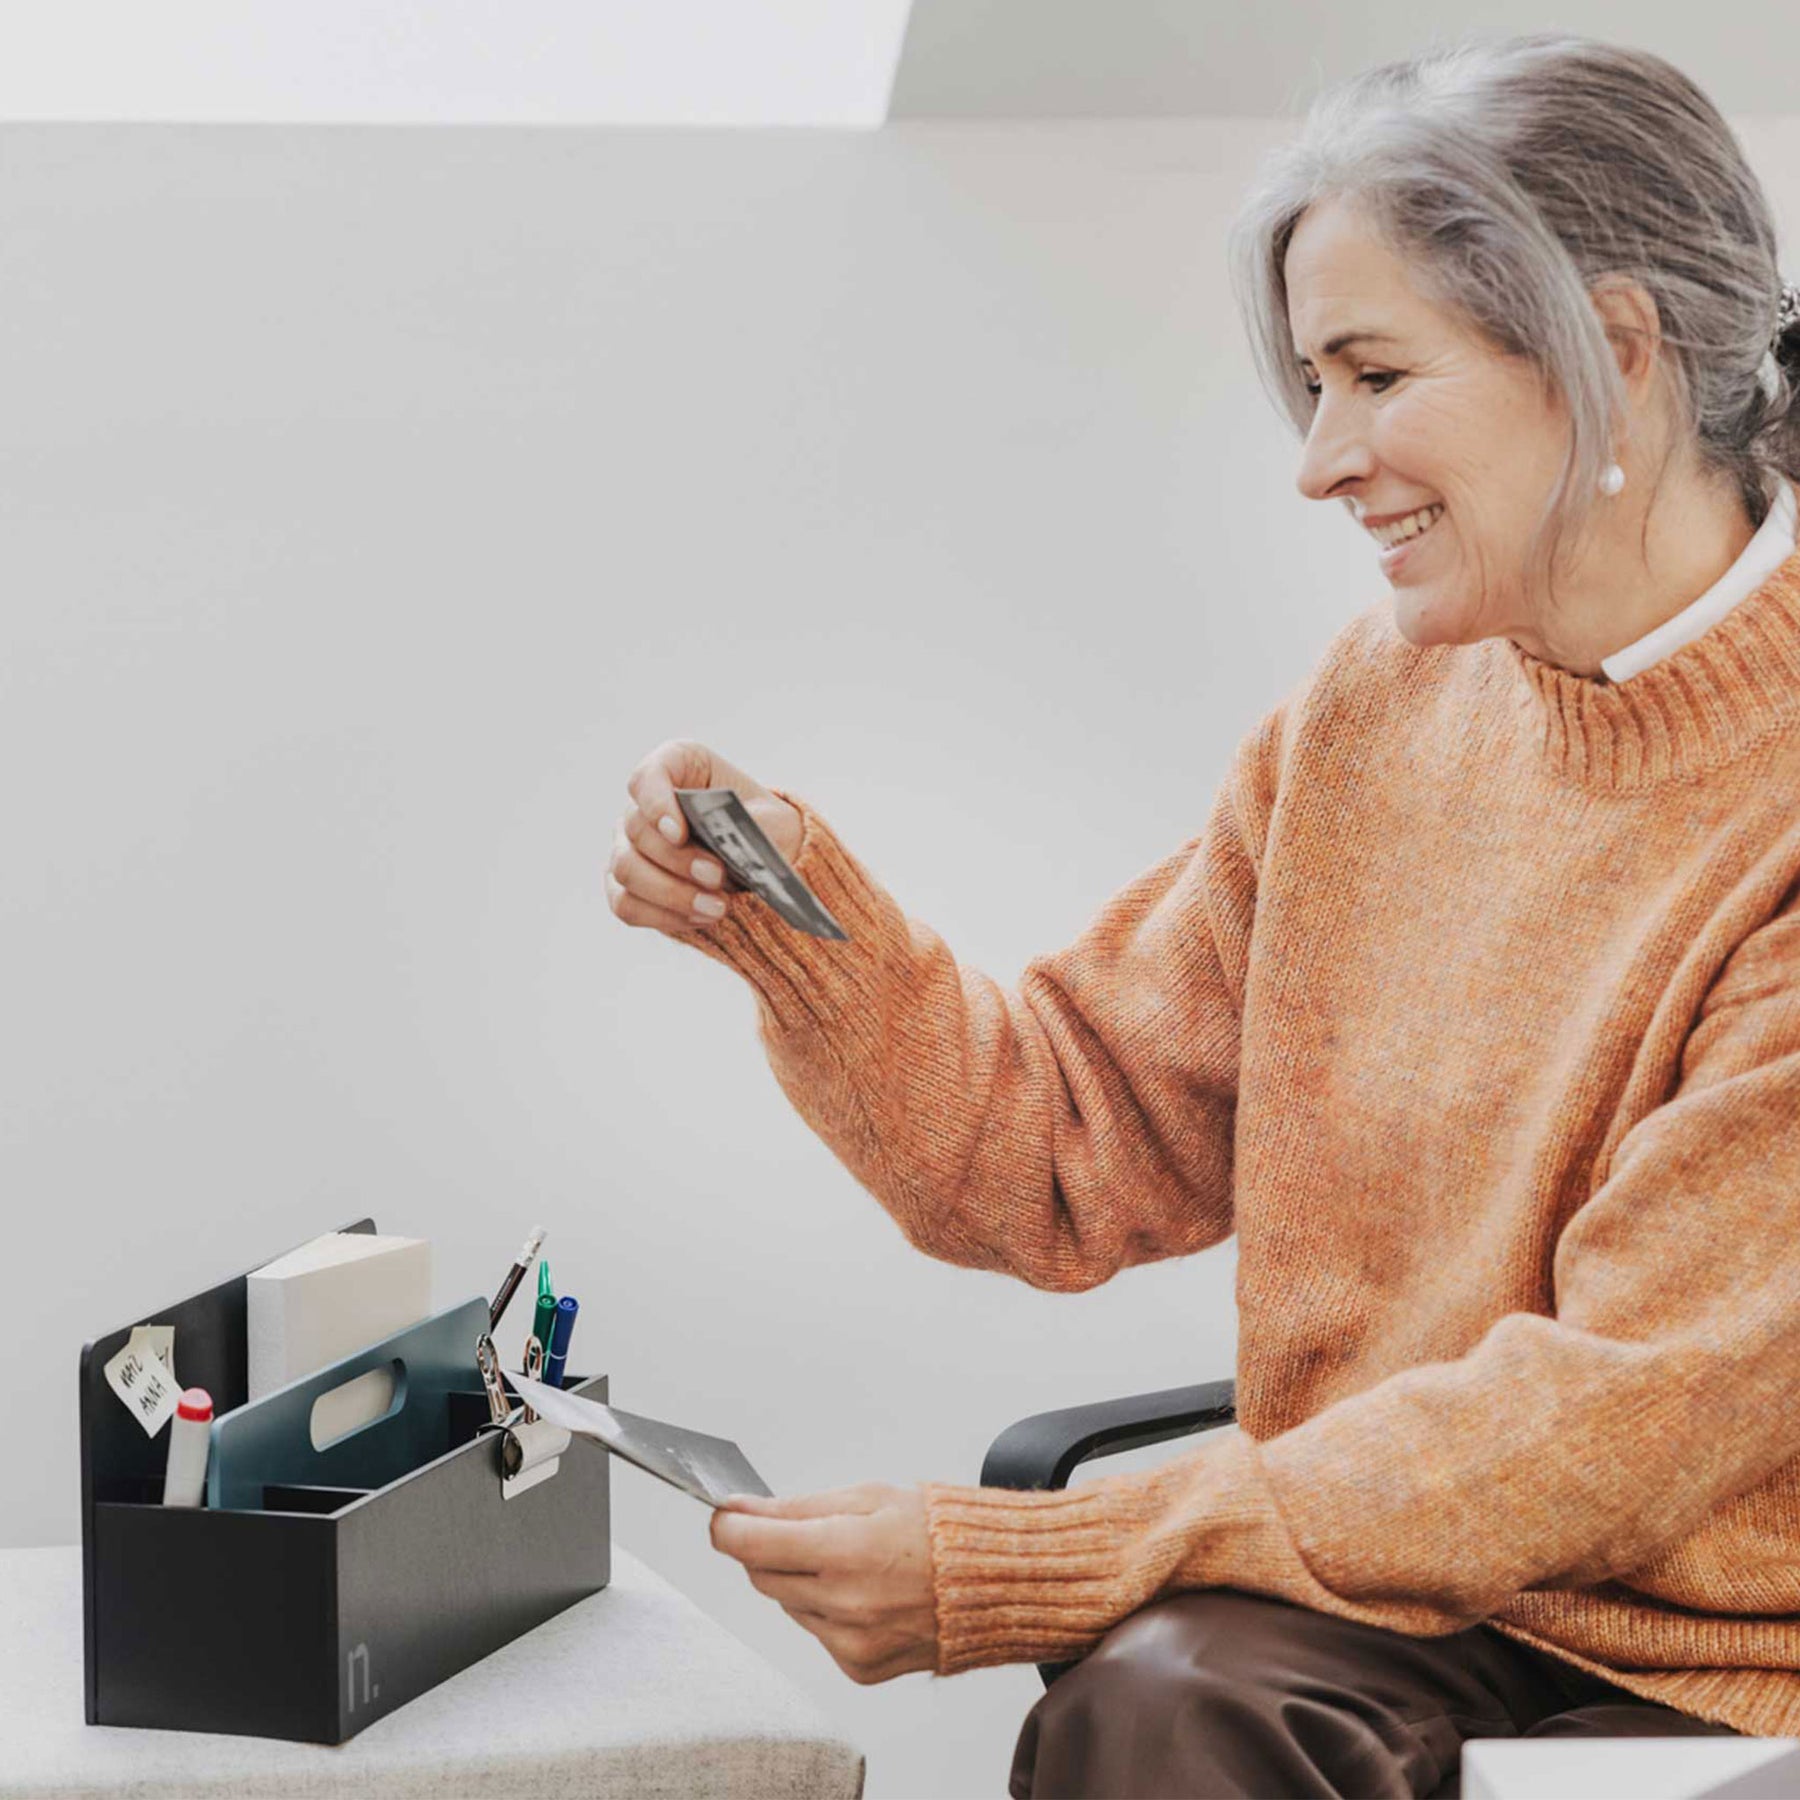 Eine ältere Frau sitzt neben einem Rollcontainer mit hellgrauem Sitzpolster. Die Frau hat graumelierte Haare und trägt einen orangen Pullover. Sie hält in beiden Händen jeweils ein Foto. Auf dem Rollcontainer steht eine Toolbox in graphit mit niagaragrünem Griffelement.